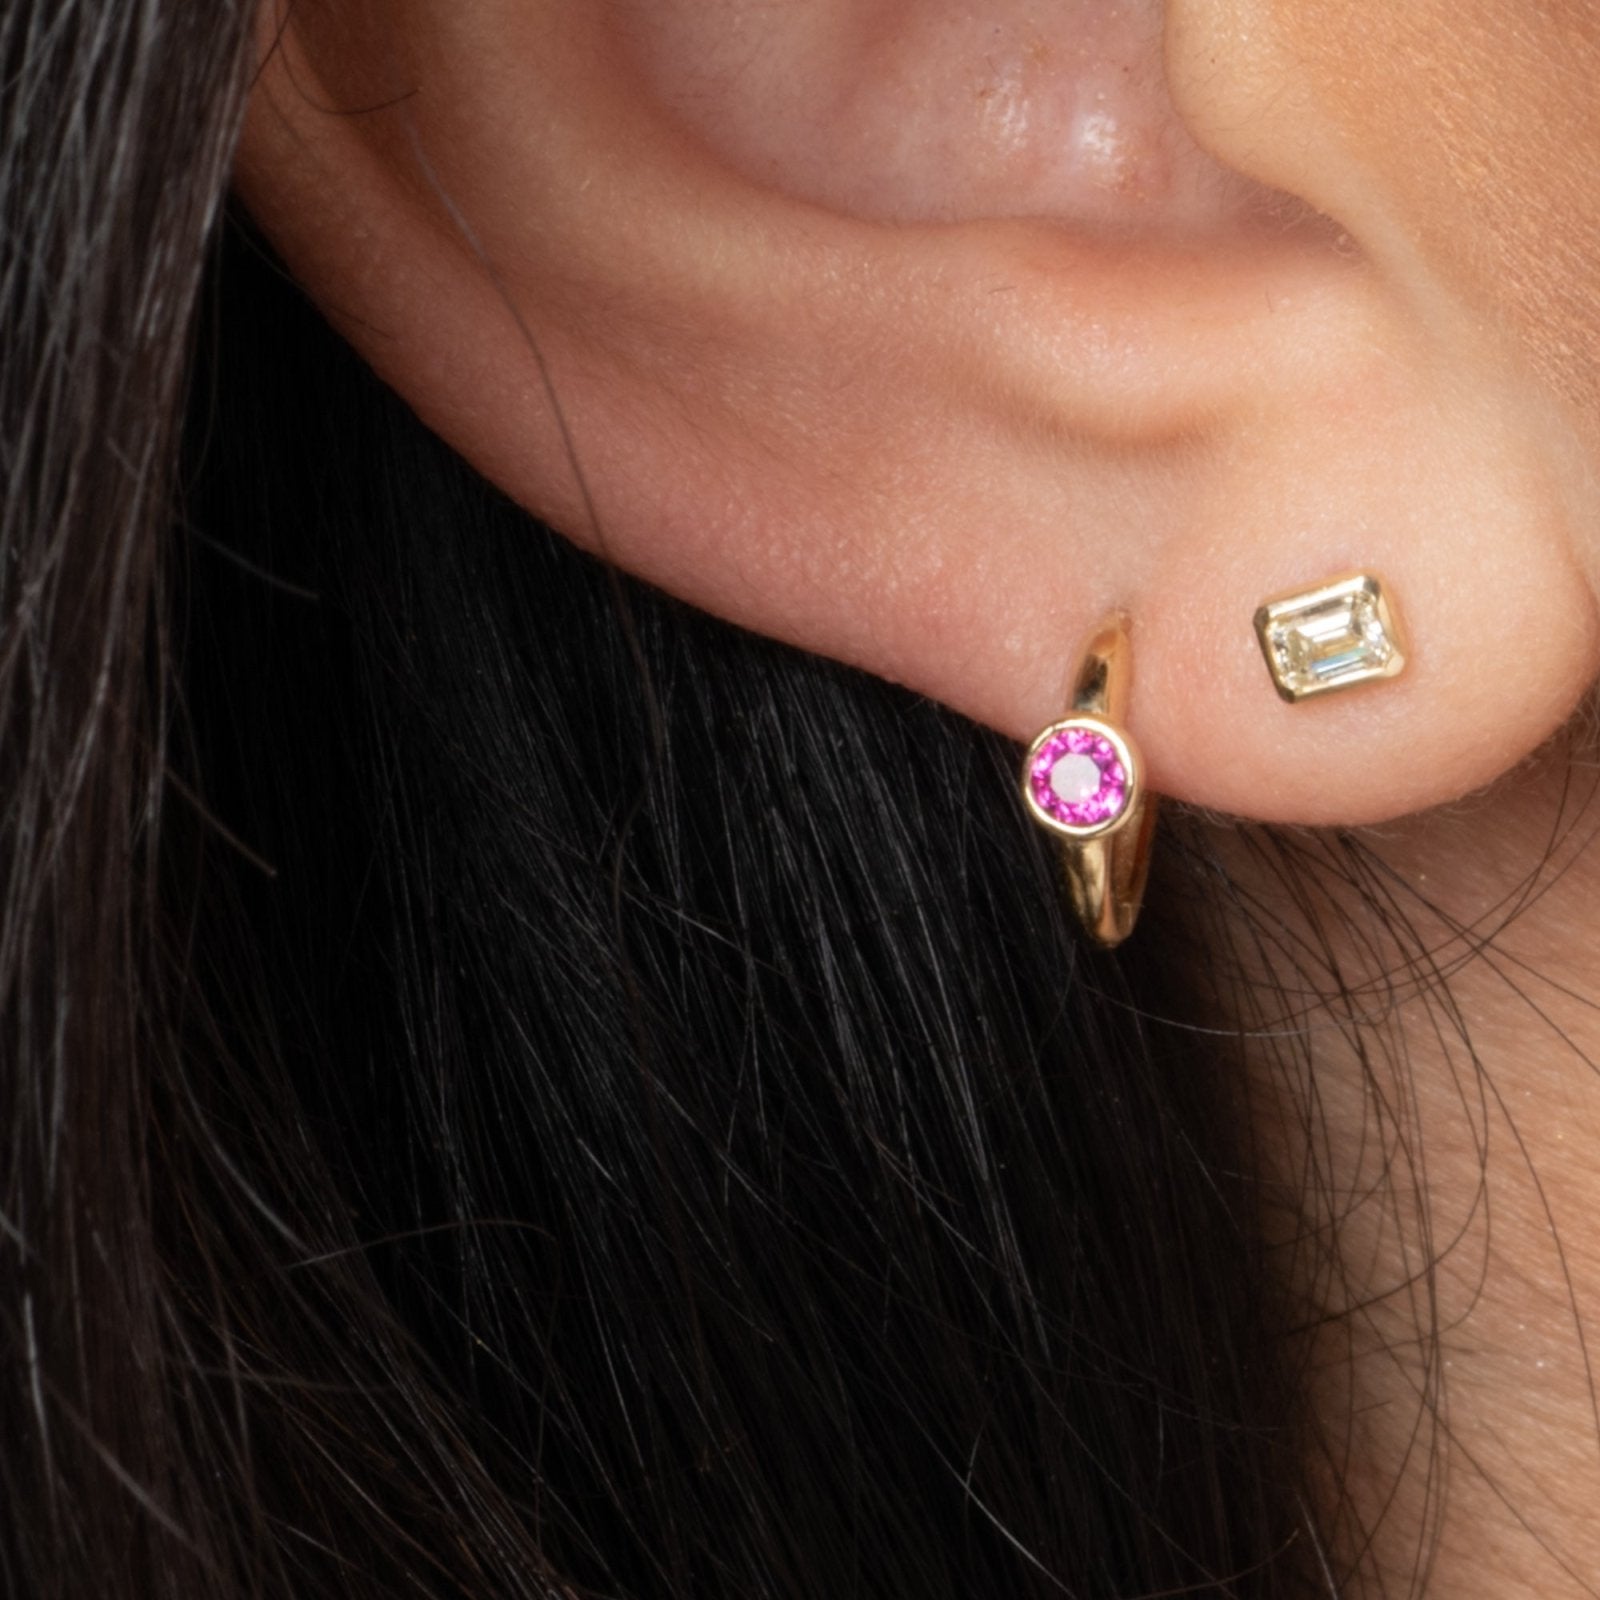 Bezel Set Ruby Huggie in 14k Gold Earrings Estella Collection #product_description# 18369 14k Birthstone cartilage hoop #tag4# #tag5# #tag6# #tag7# #tag8# #tag9# #tag10# 6mm Single Hoop